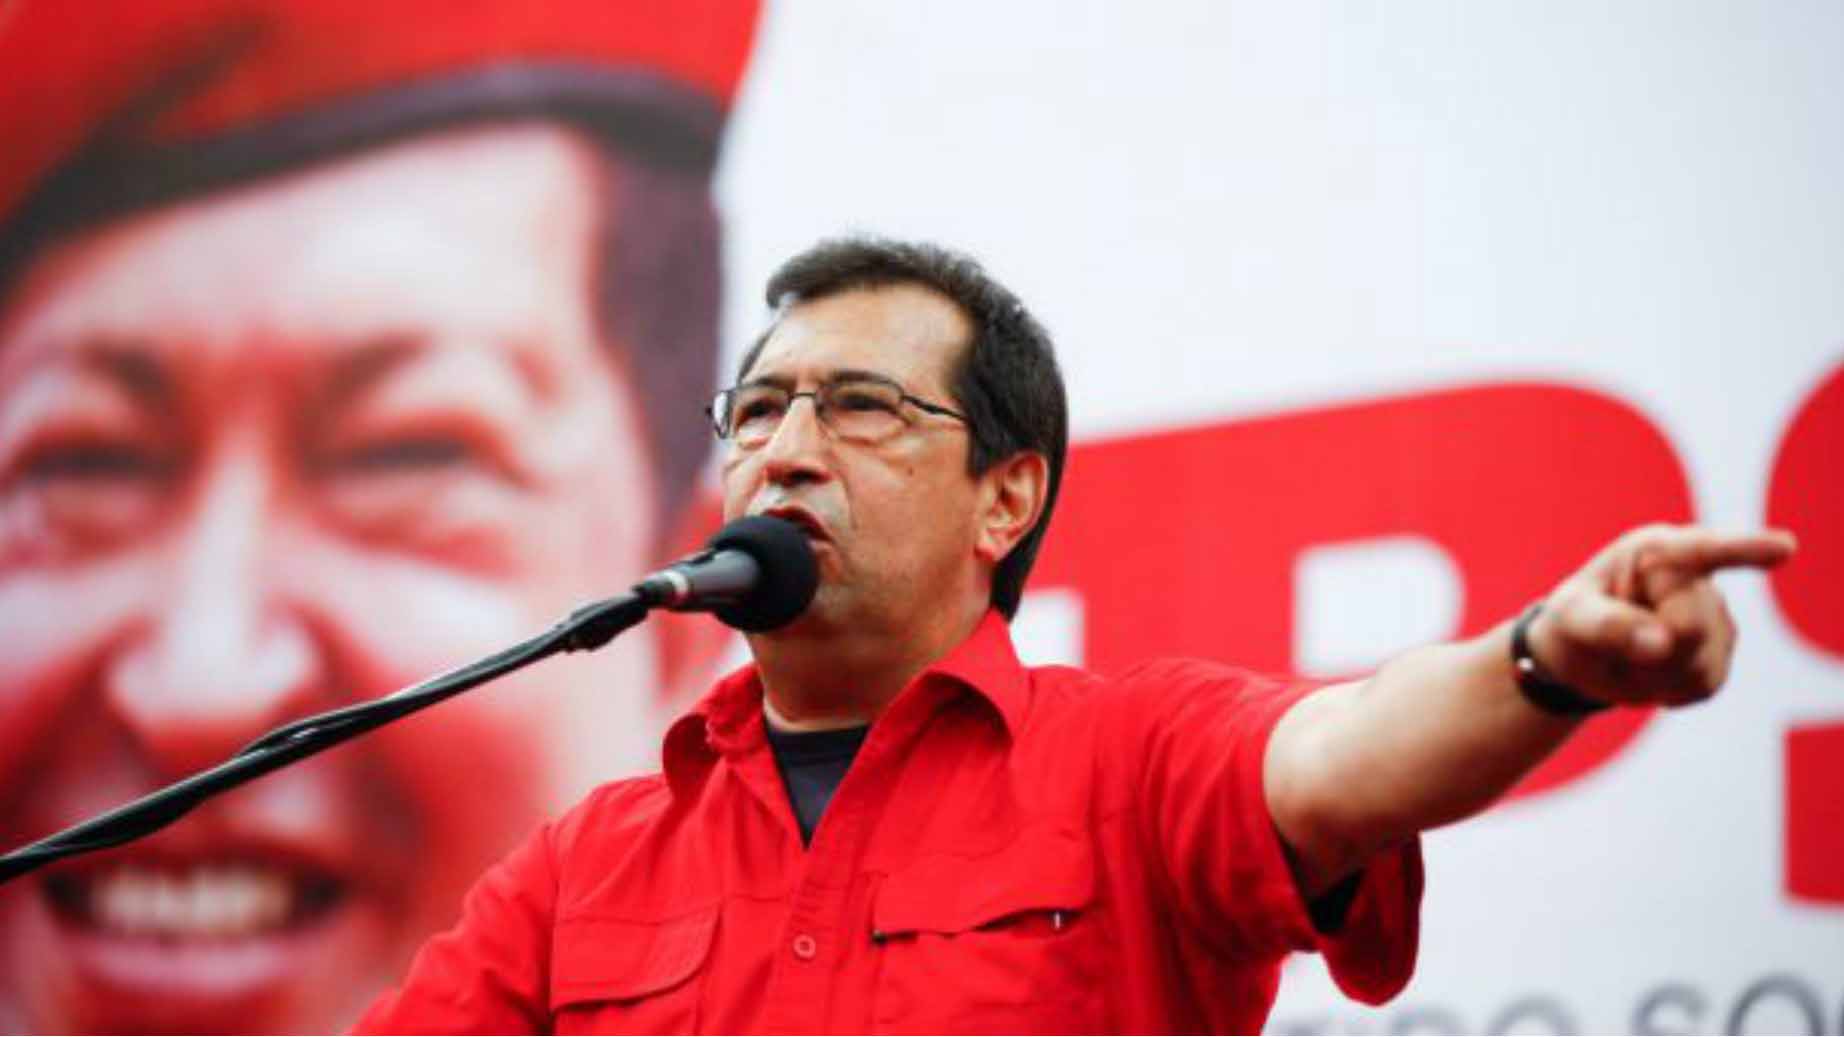 Adán-Chávez